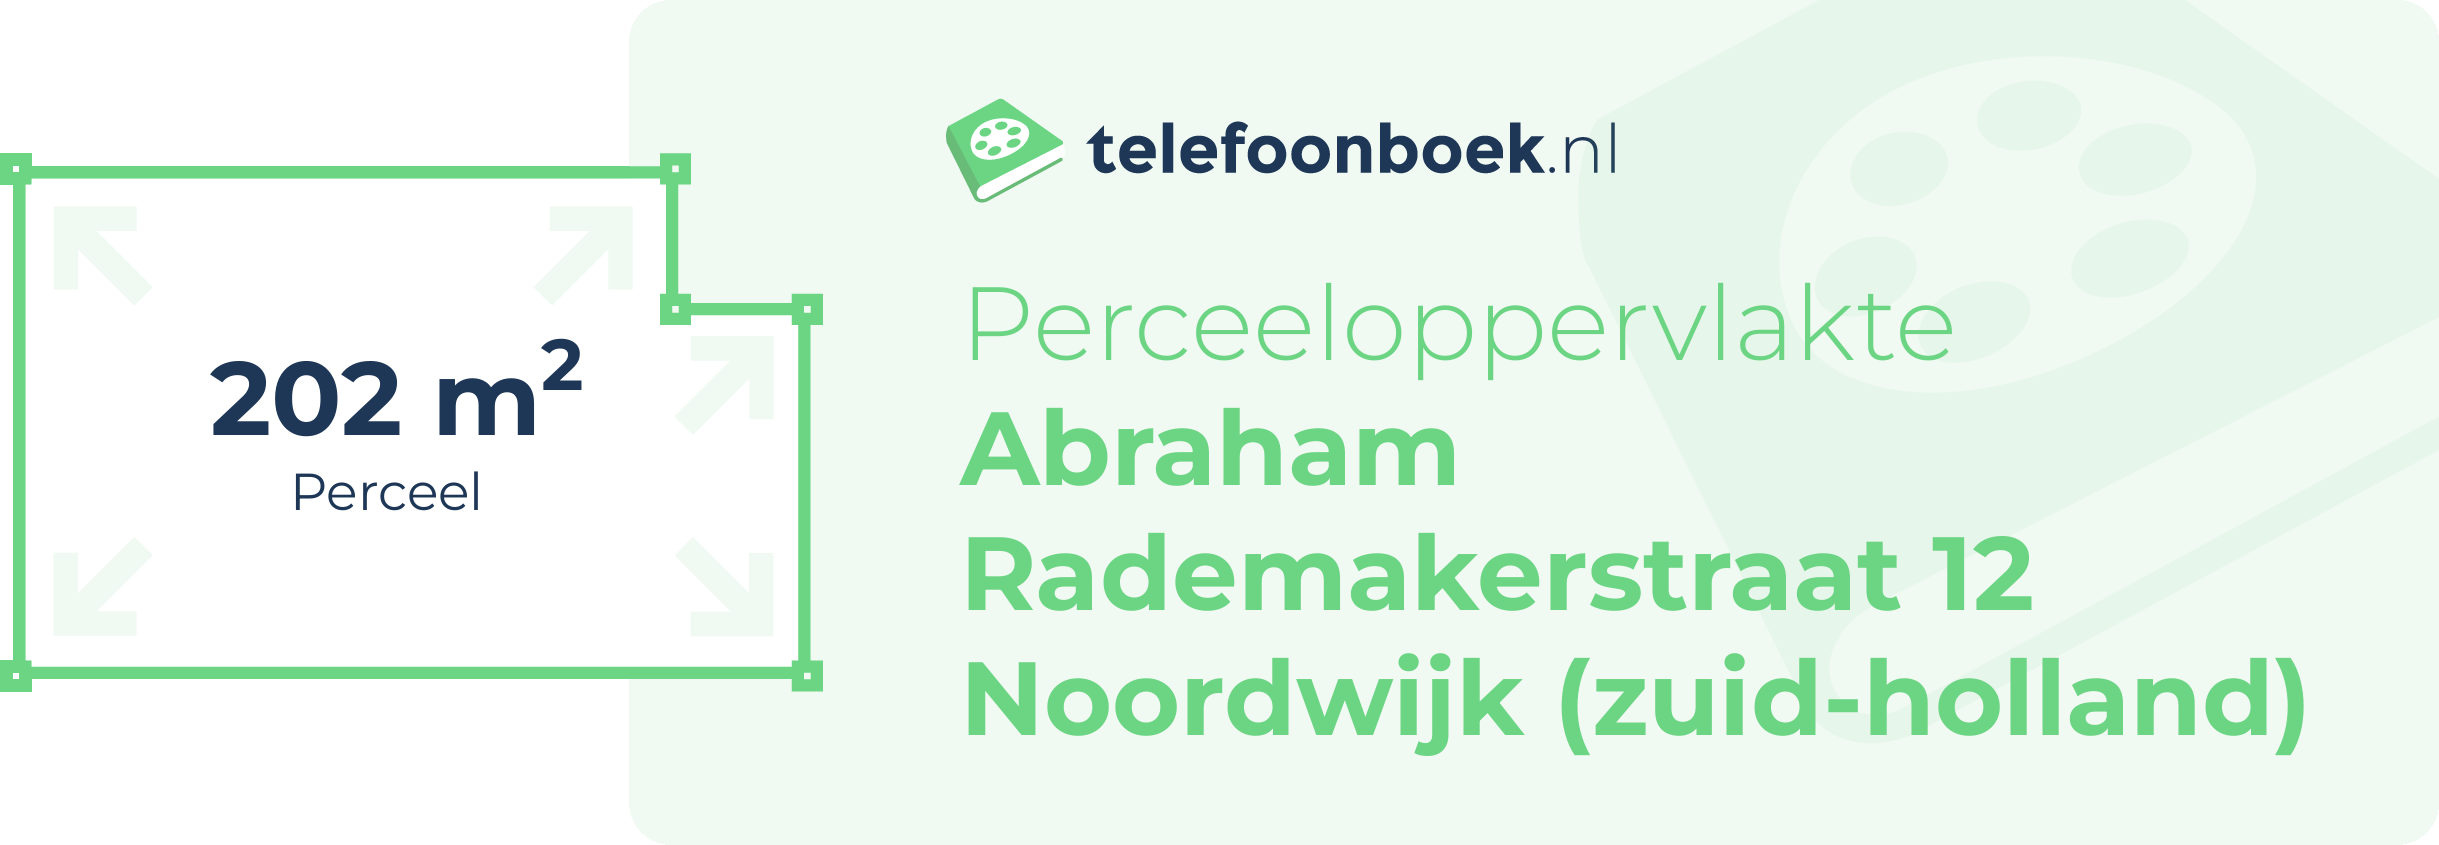 Perceeloppervlakte Abraham Rademakerstraat 12 Noordwijk (Zuid-Holland)